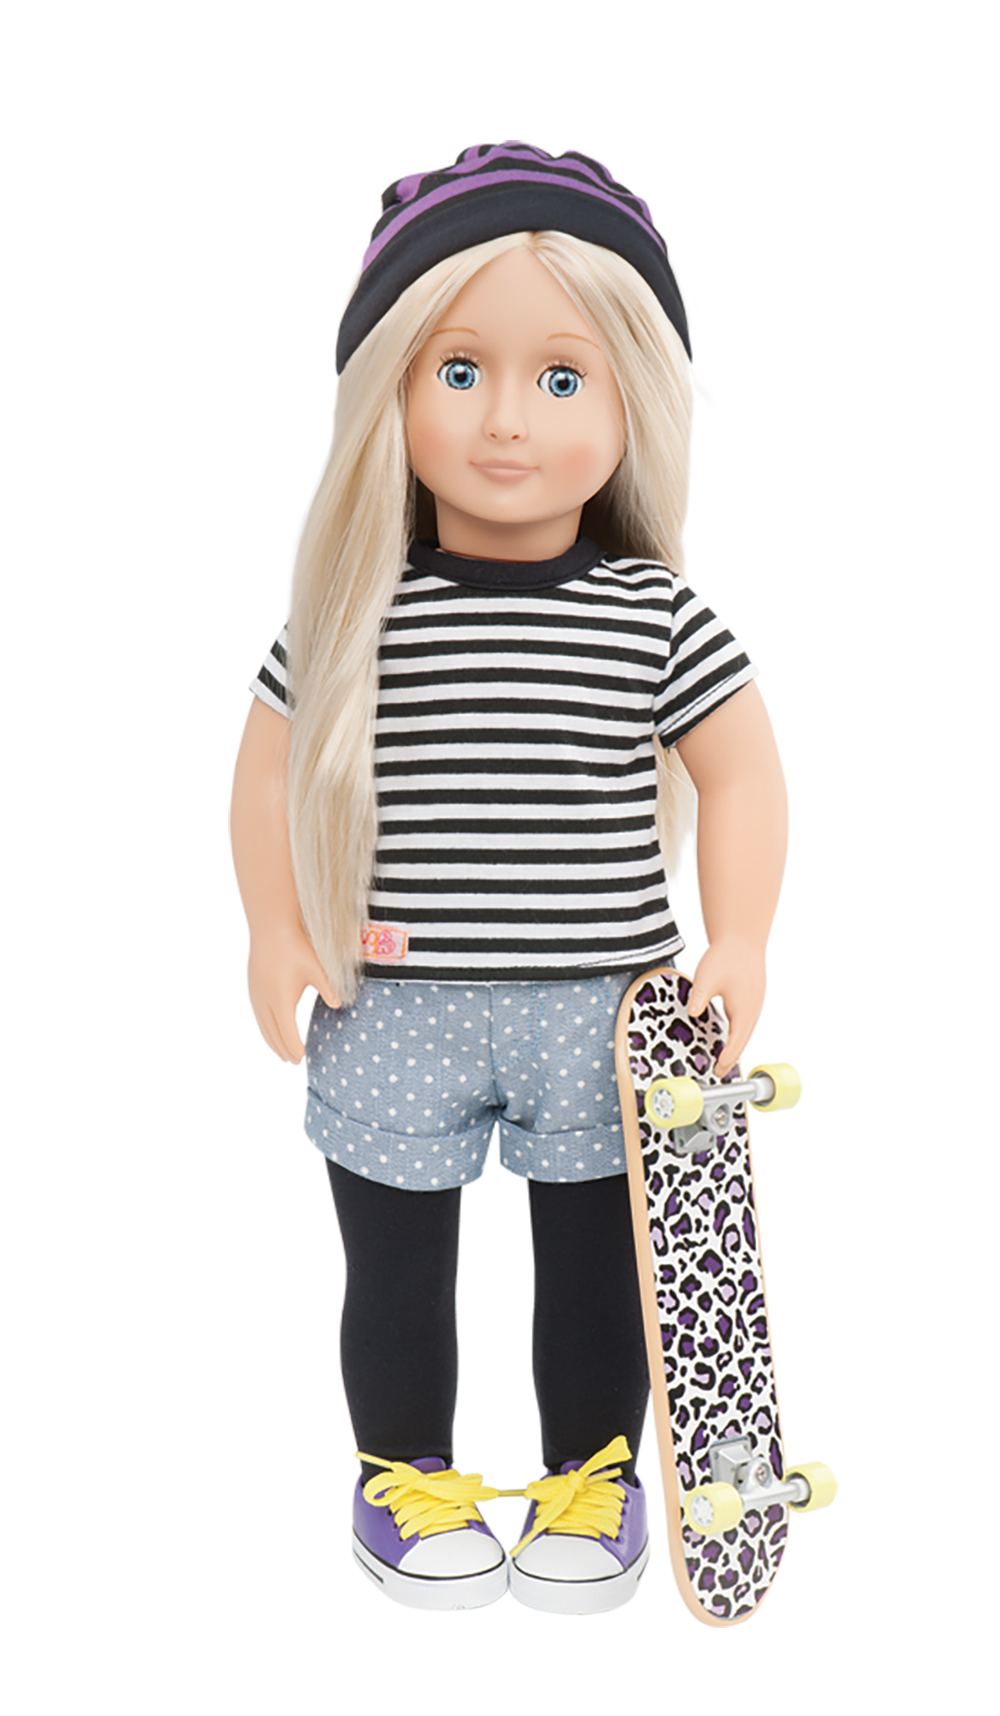 environ 45.72 cm À la mode jouet accessoires poupée Roller Chaussures De Skate Pour 18 in Coloré poupée 